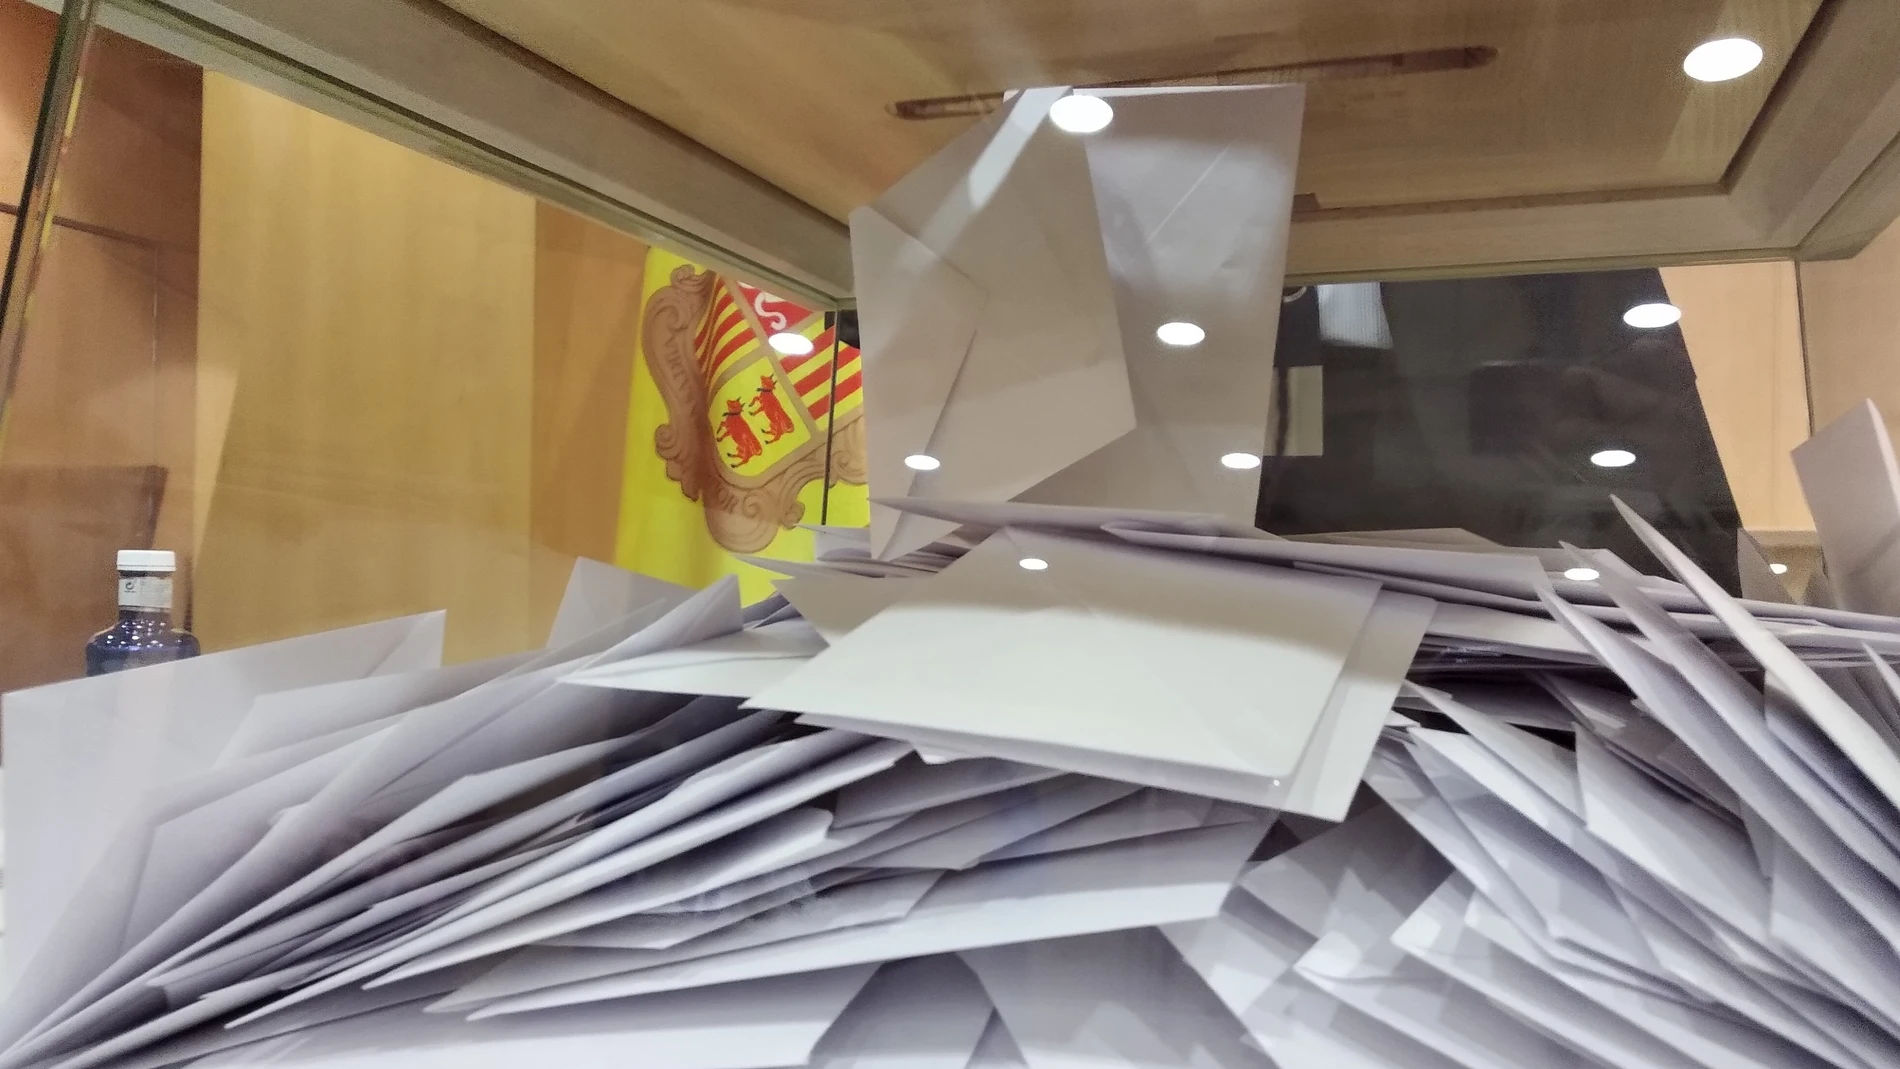 Fotografía de una urna electoral en la que se introducen los sobres con las votaciones